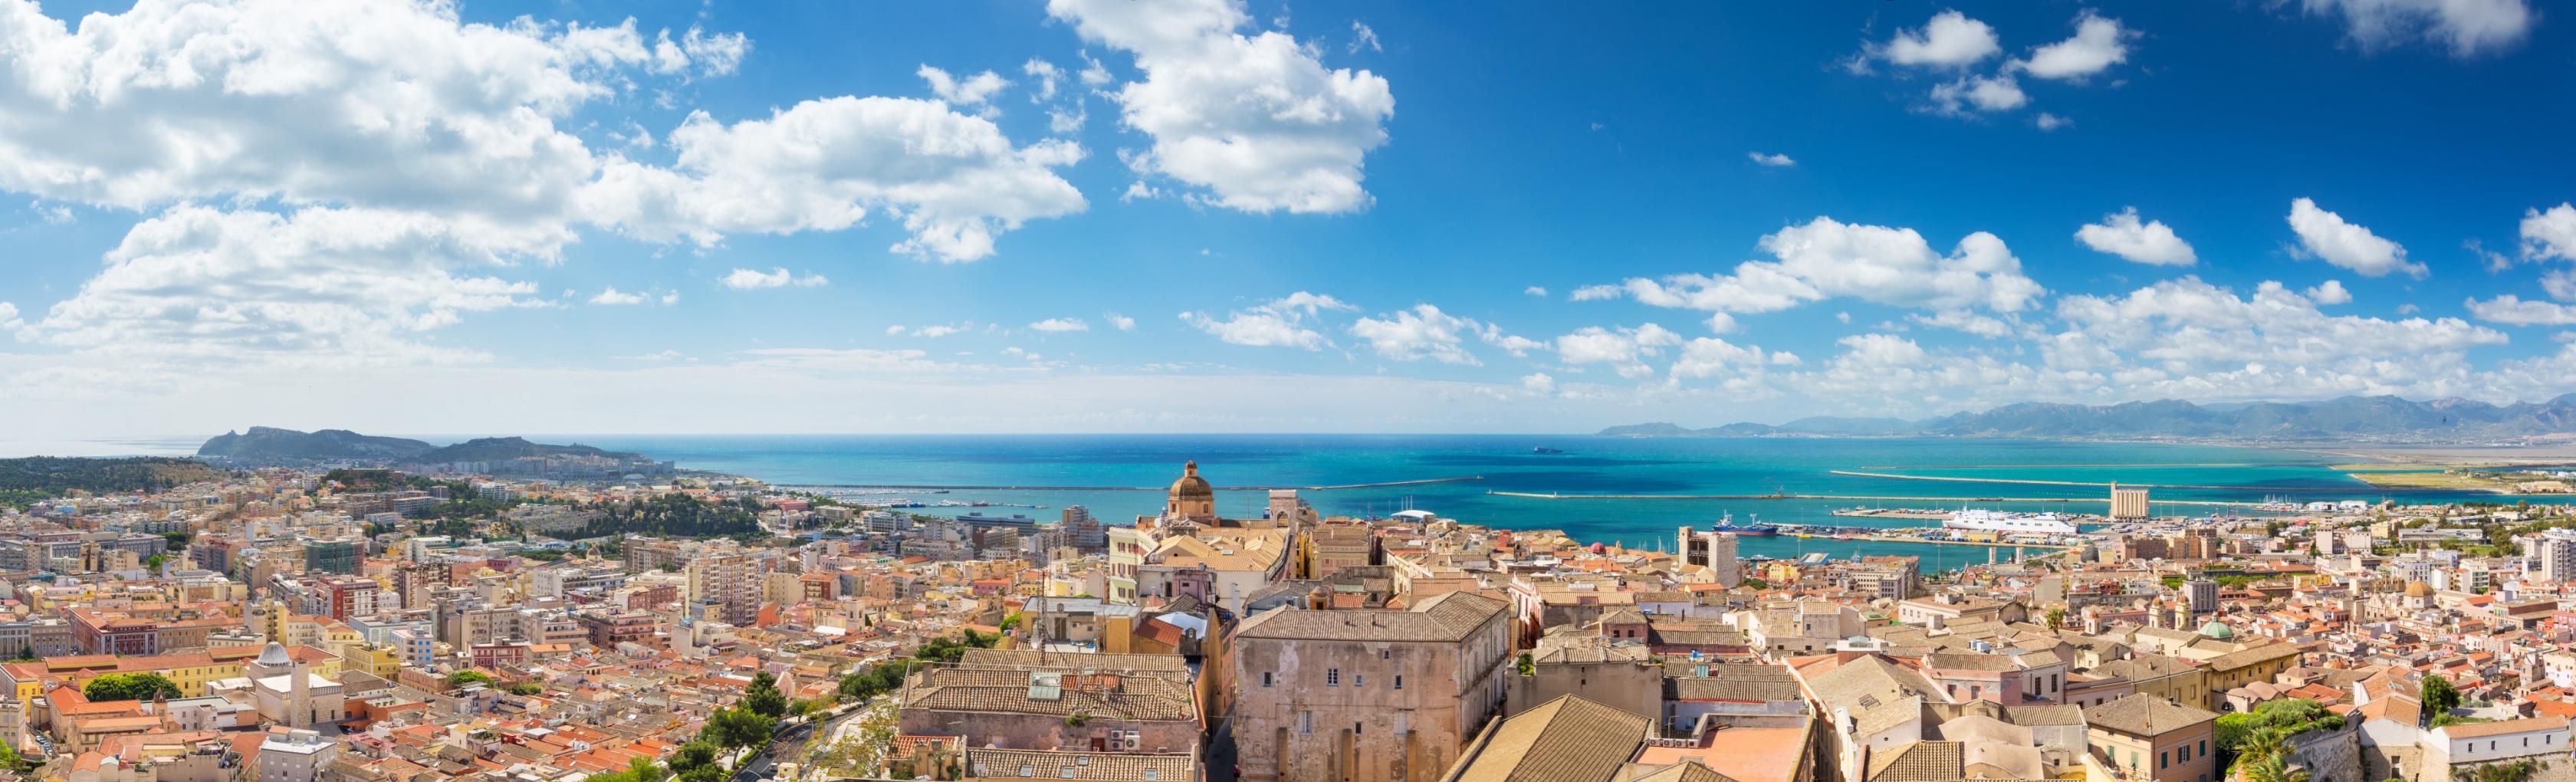 Cagliari dall'alto - vista dal centro storico